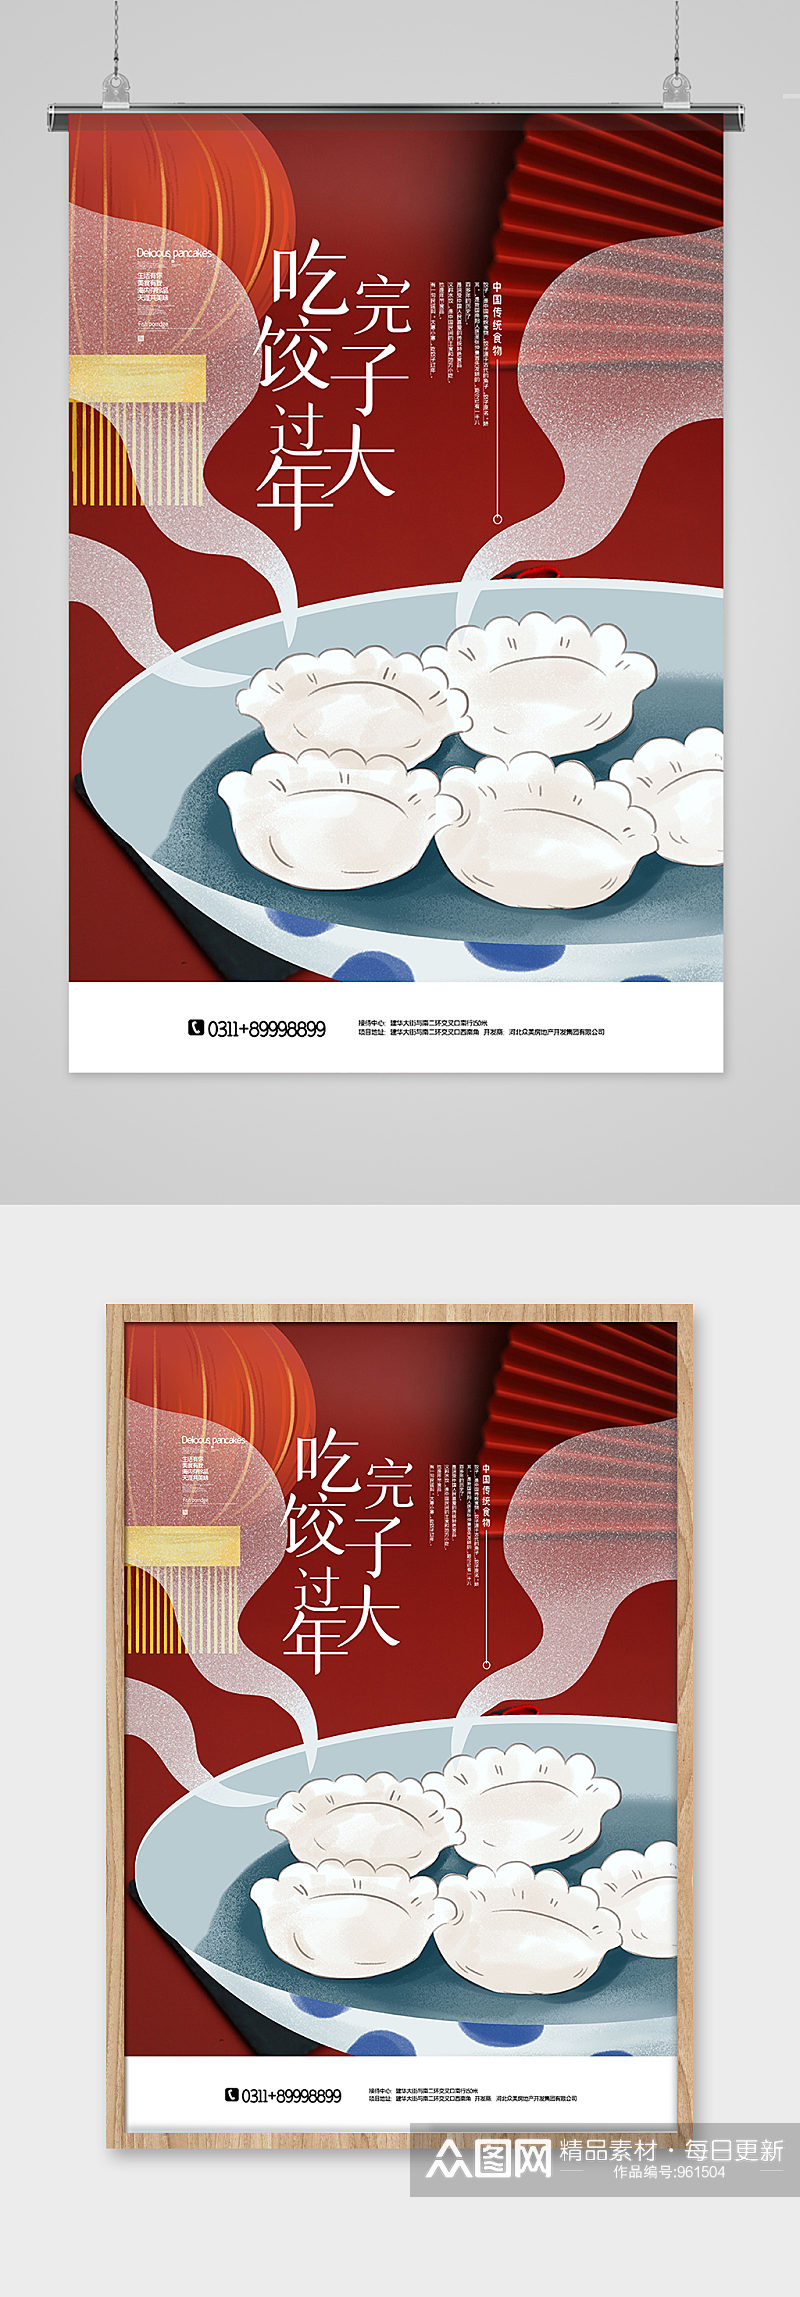 创意简洁中华美食饺子海报素材